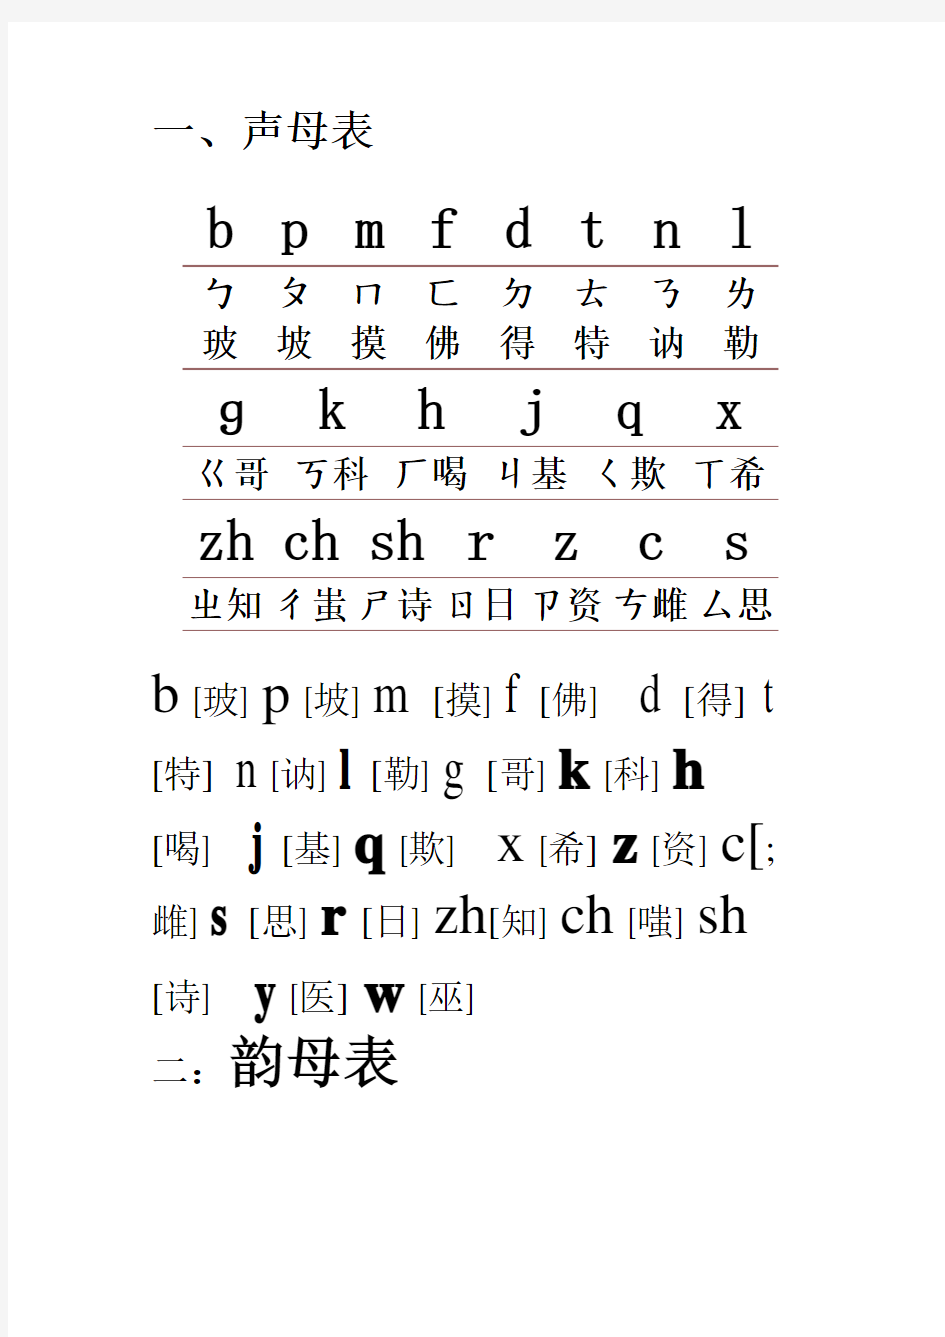 小学汉语拼音字母表-26个汉语拼音字母表新